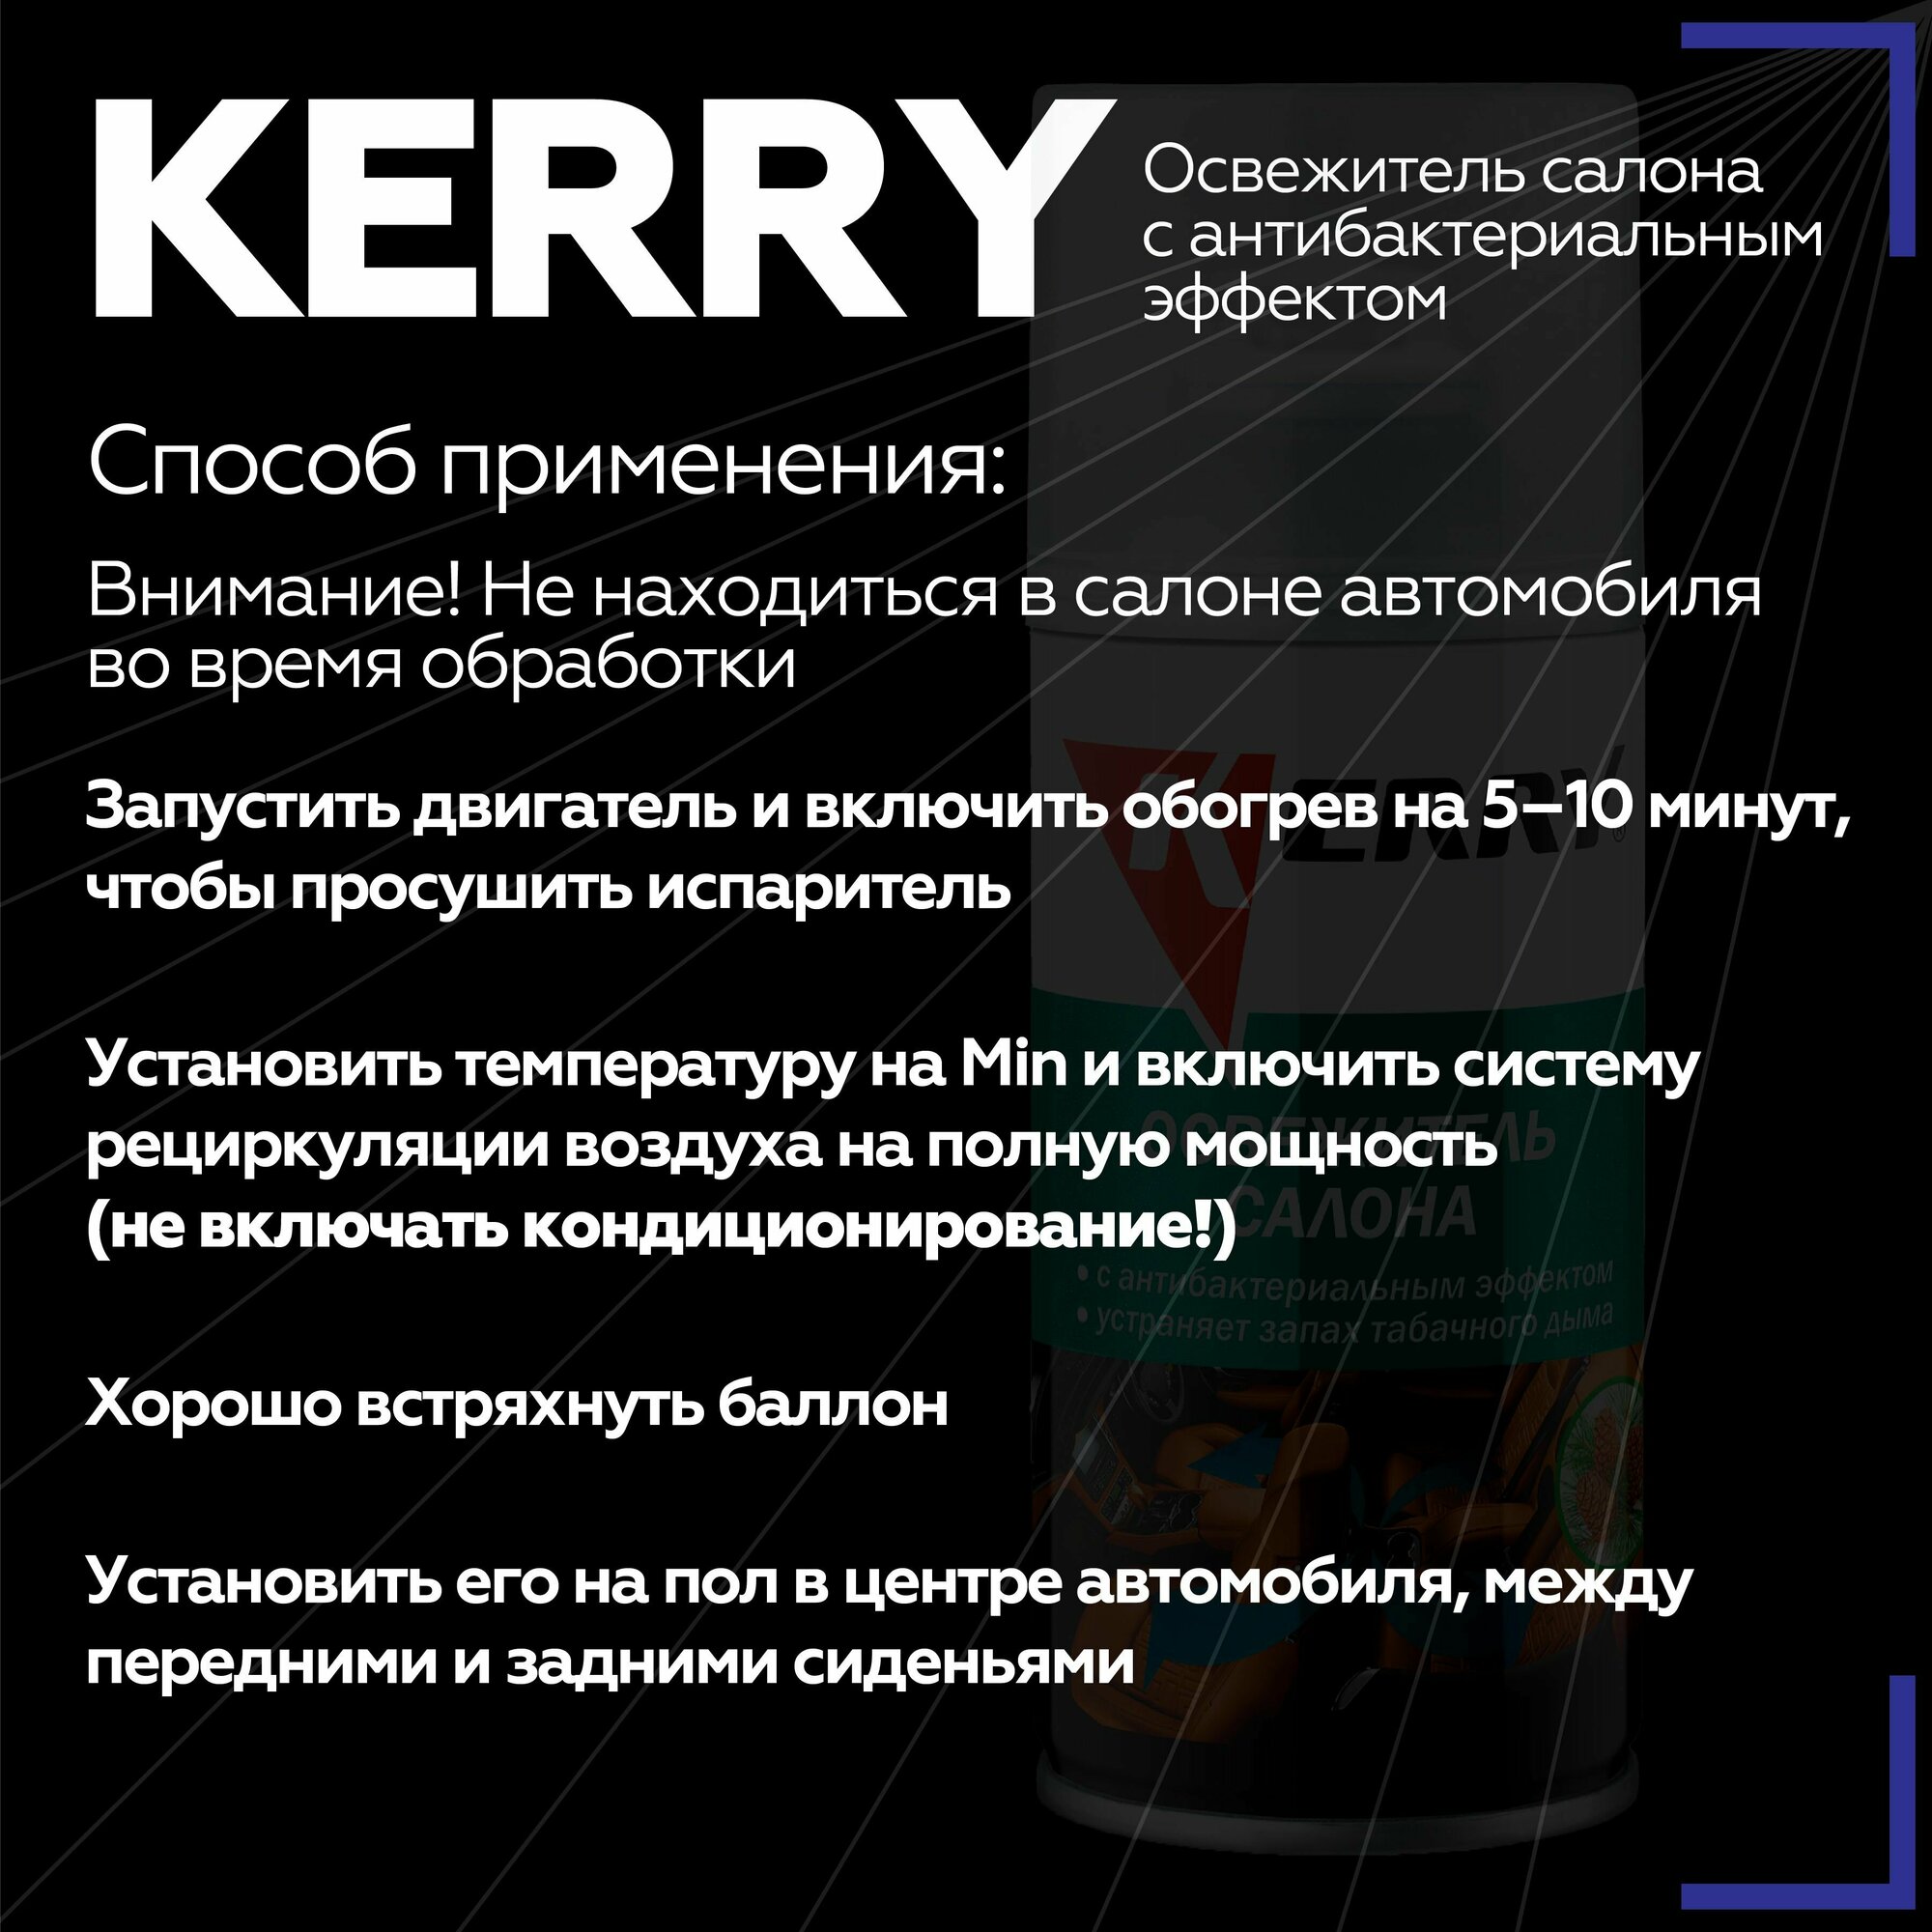 Освежитель салона 210 мл KERRY с антибактериальным эффектом баллон KR-917-1